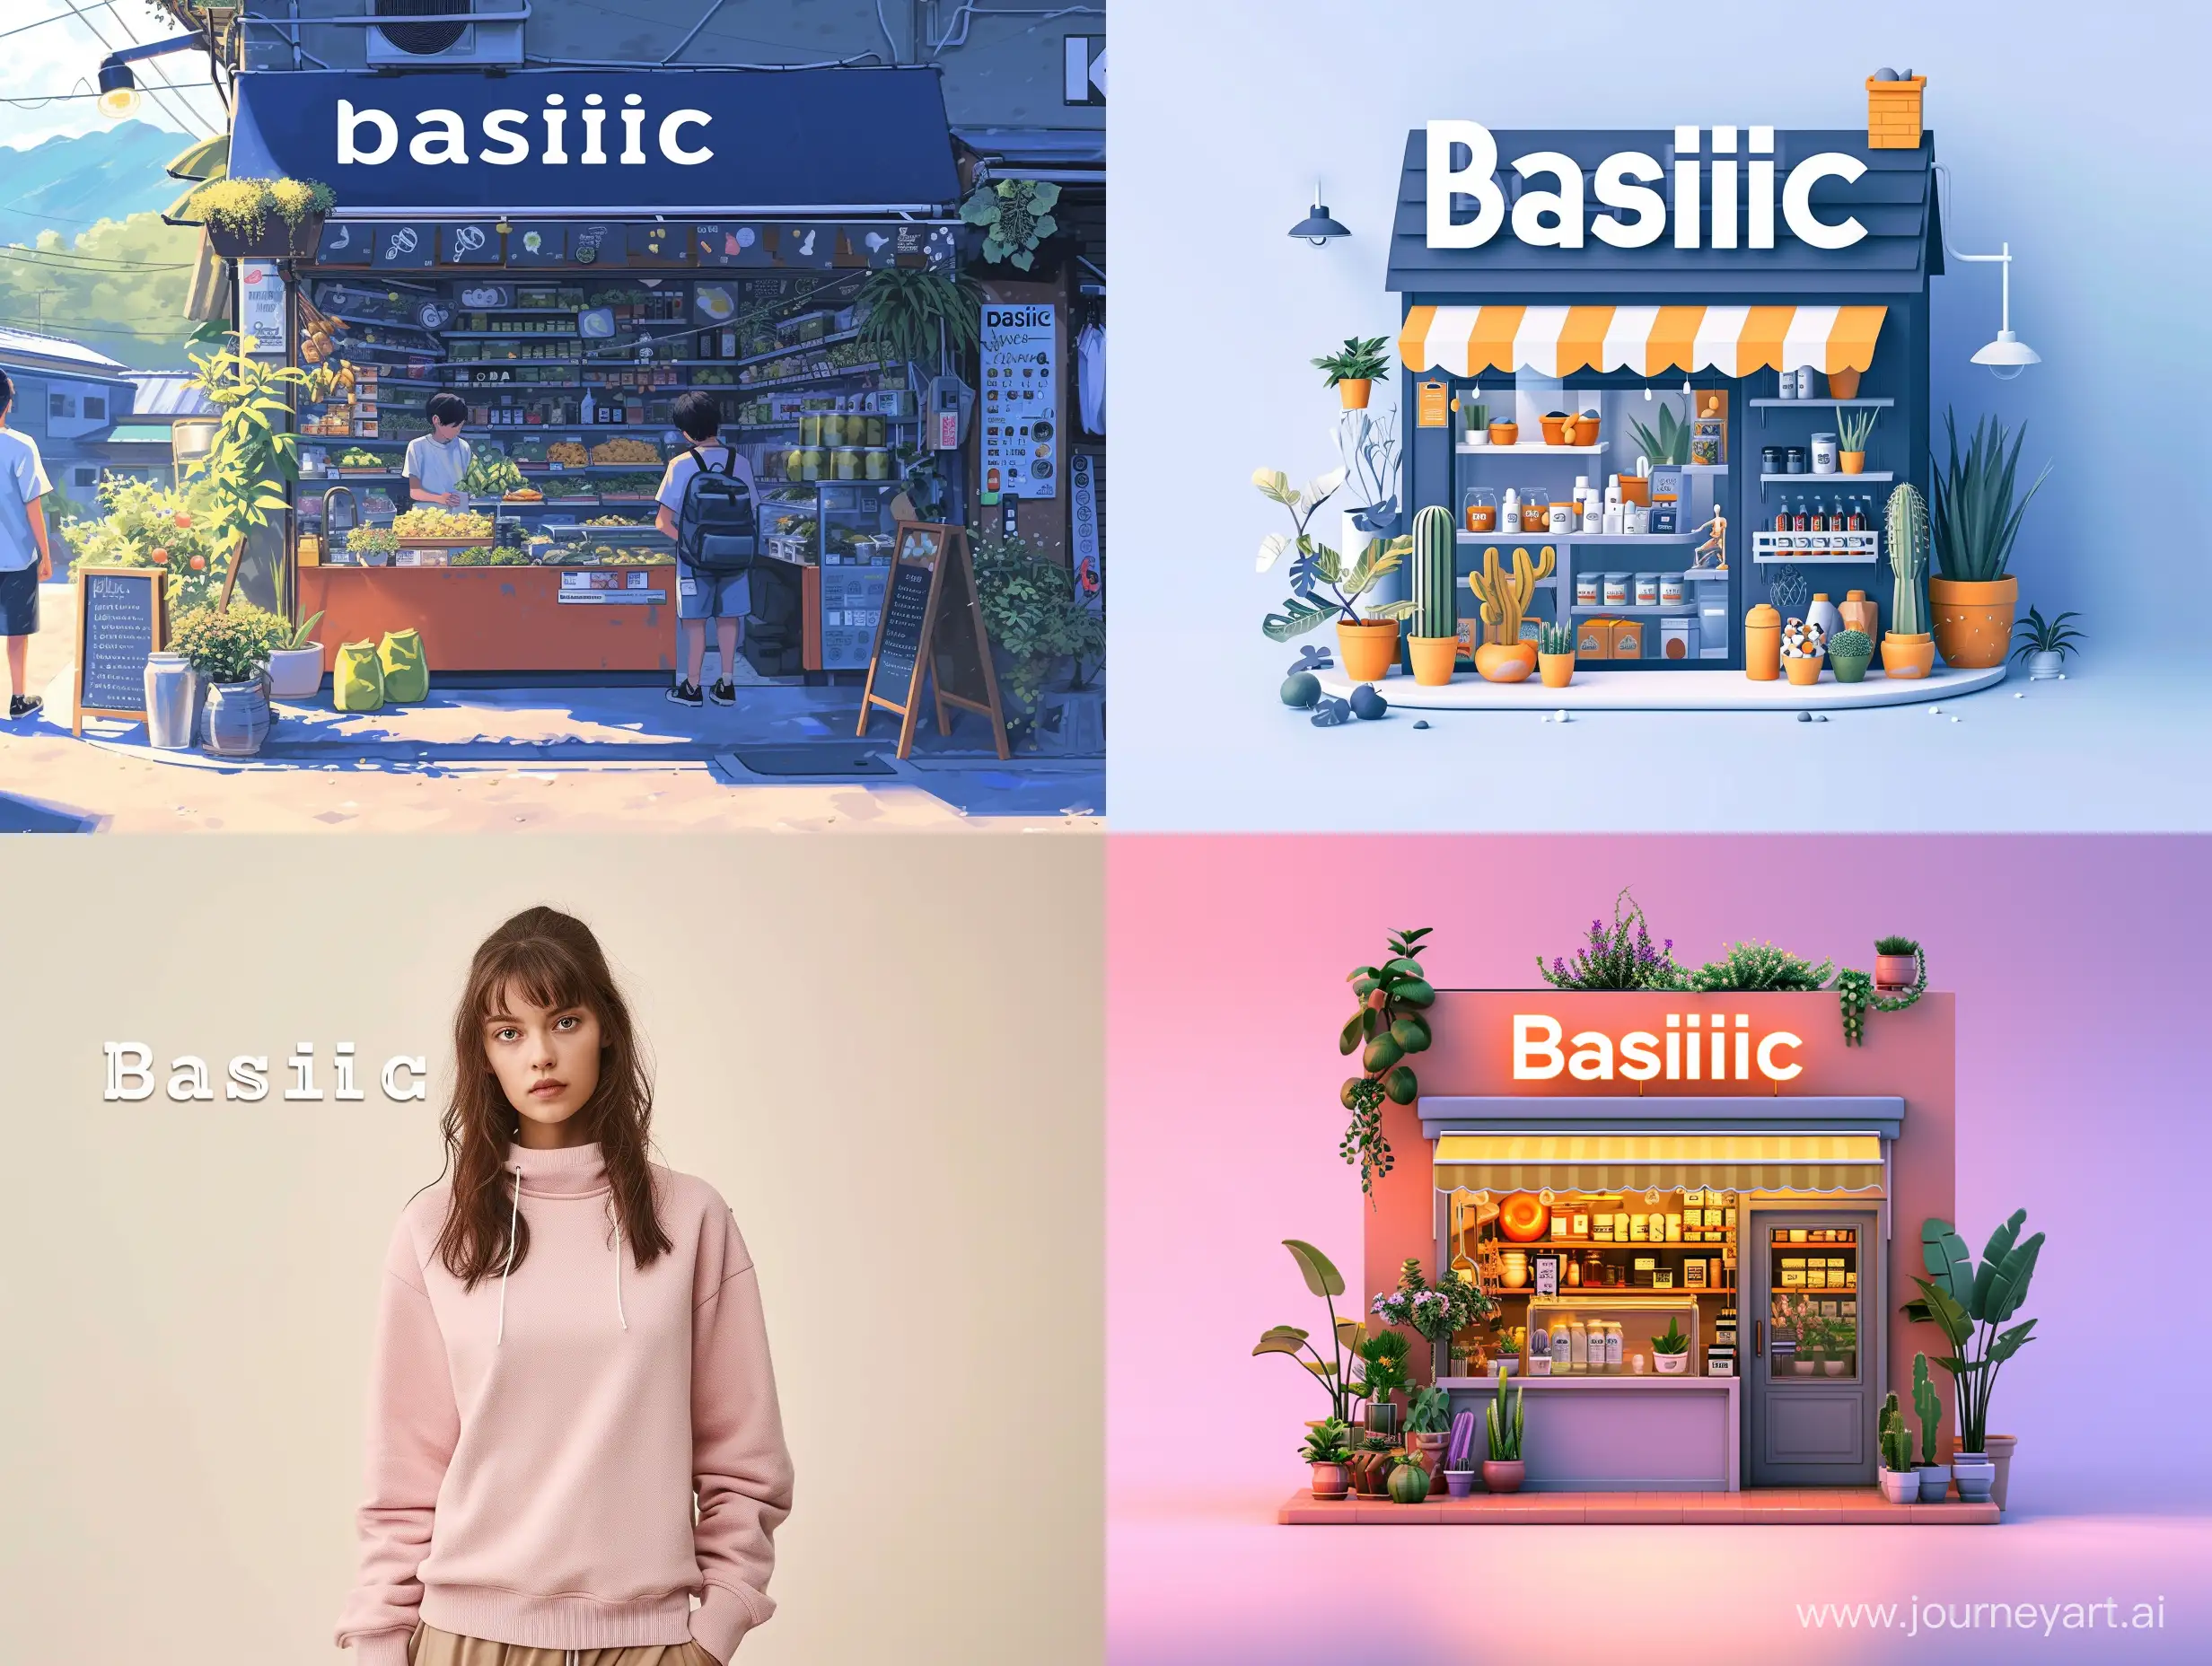 Обложка для онлайн магазина. Должно присутствовать имя магазина "basilic".